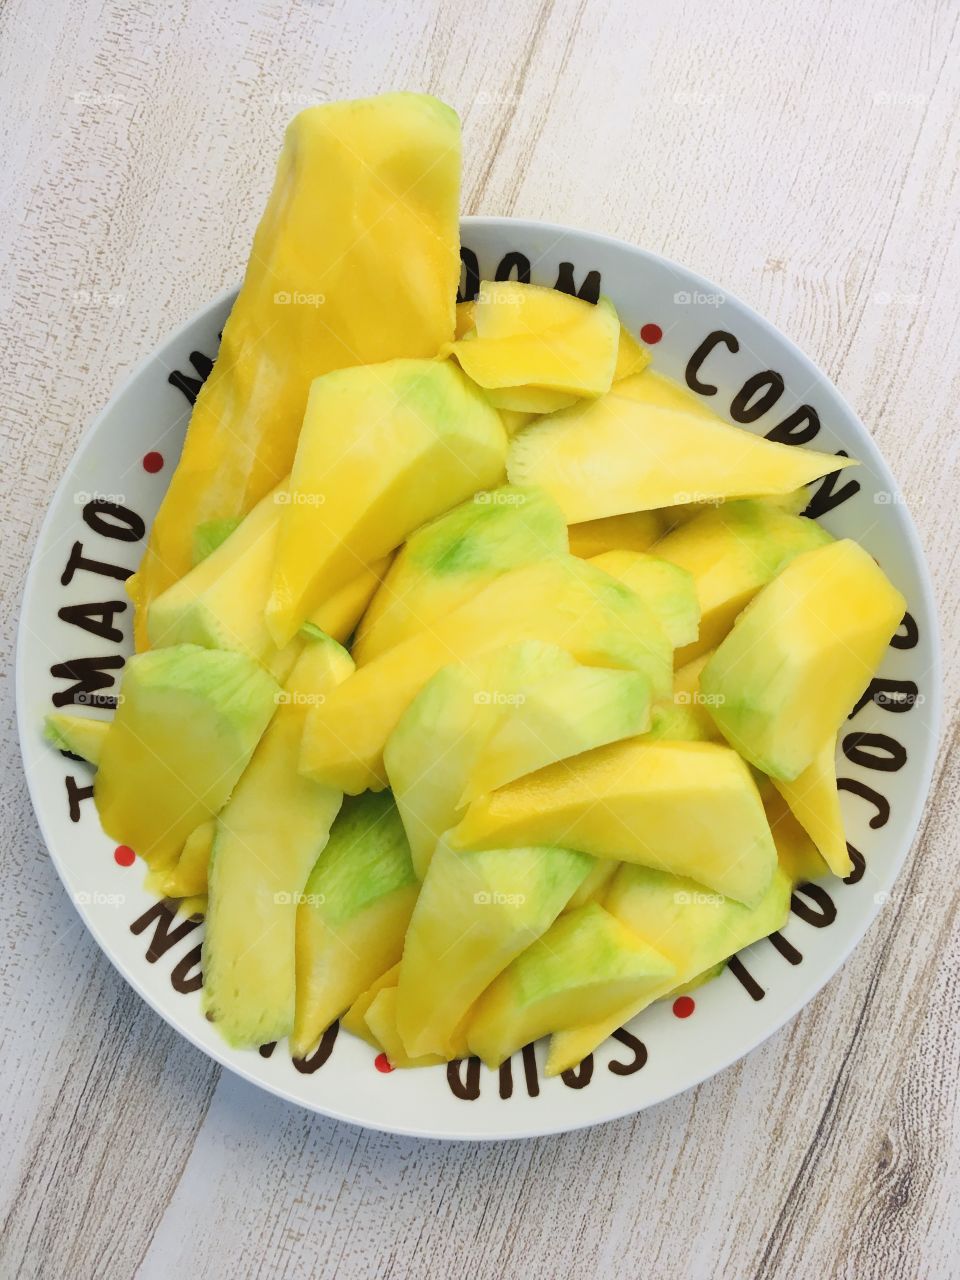 One big mango, yum!